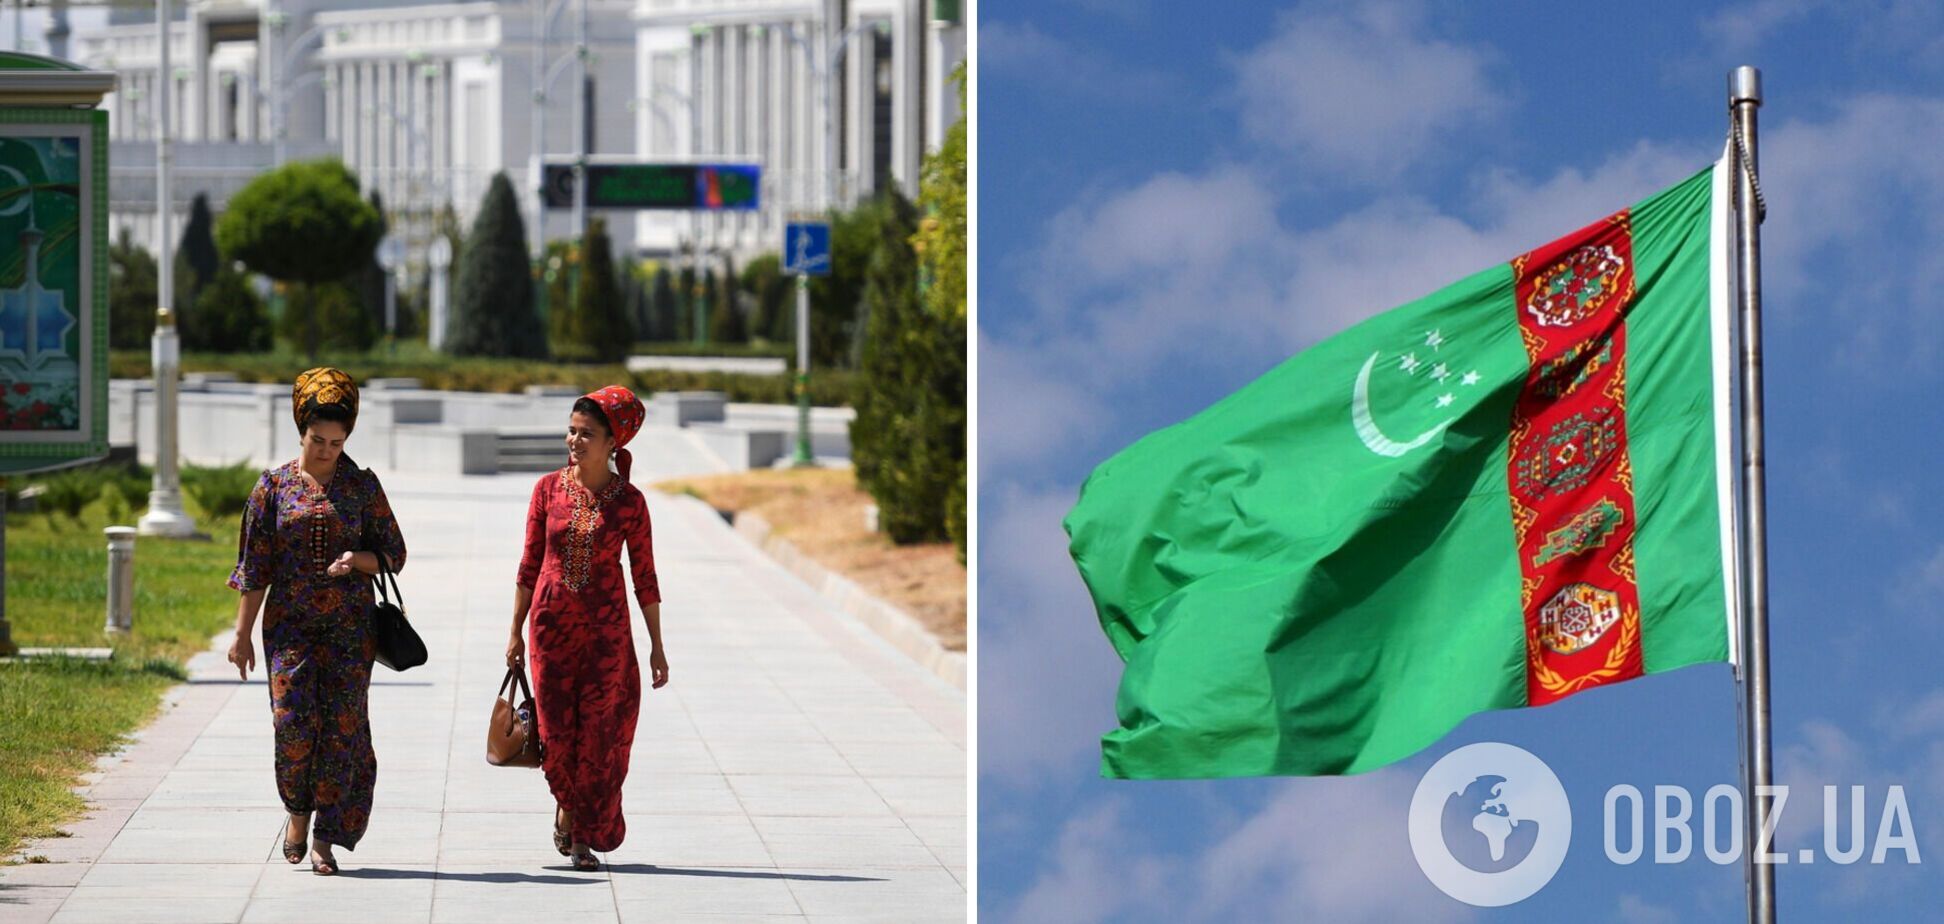 Під забороною збільшені губи, манікюр і поїздки на передньому сидінні: у Туркменістані ввели нові 'закони' для жінок